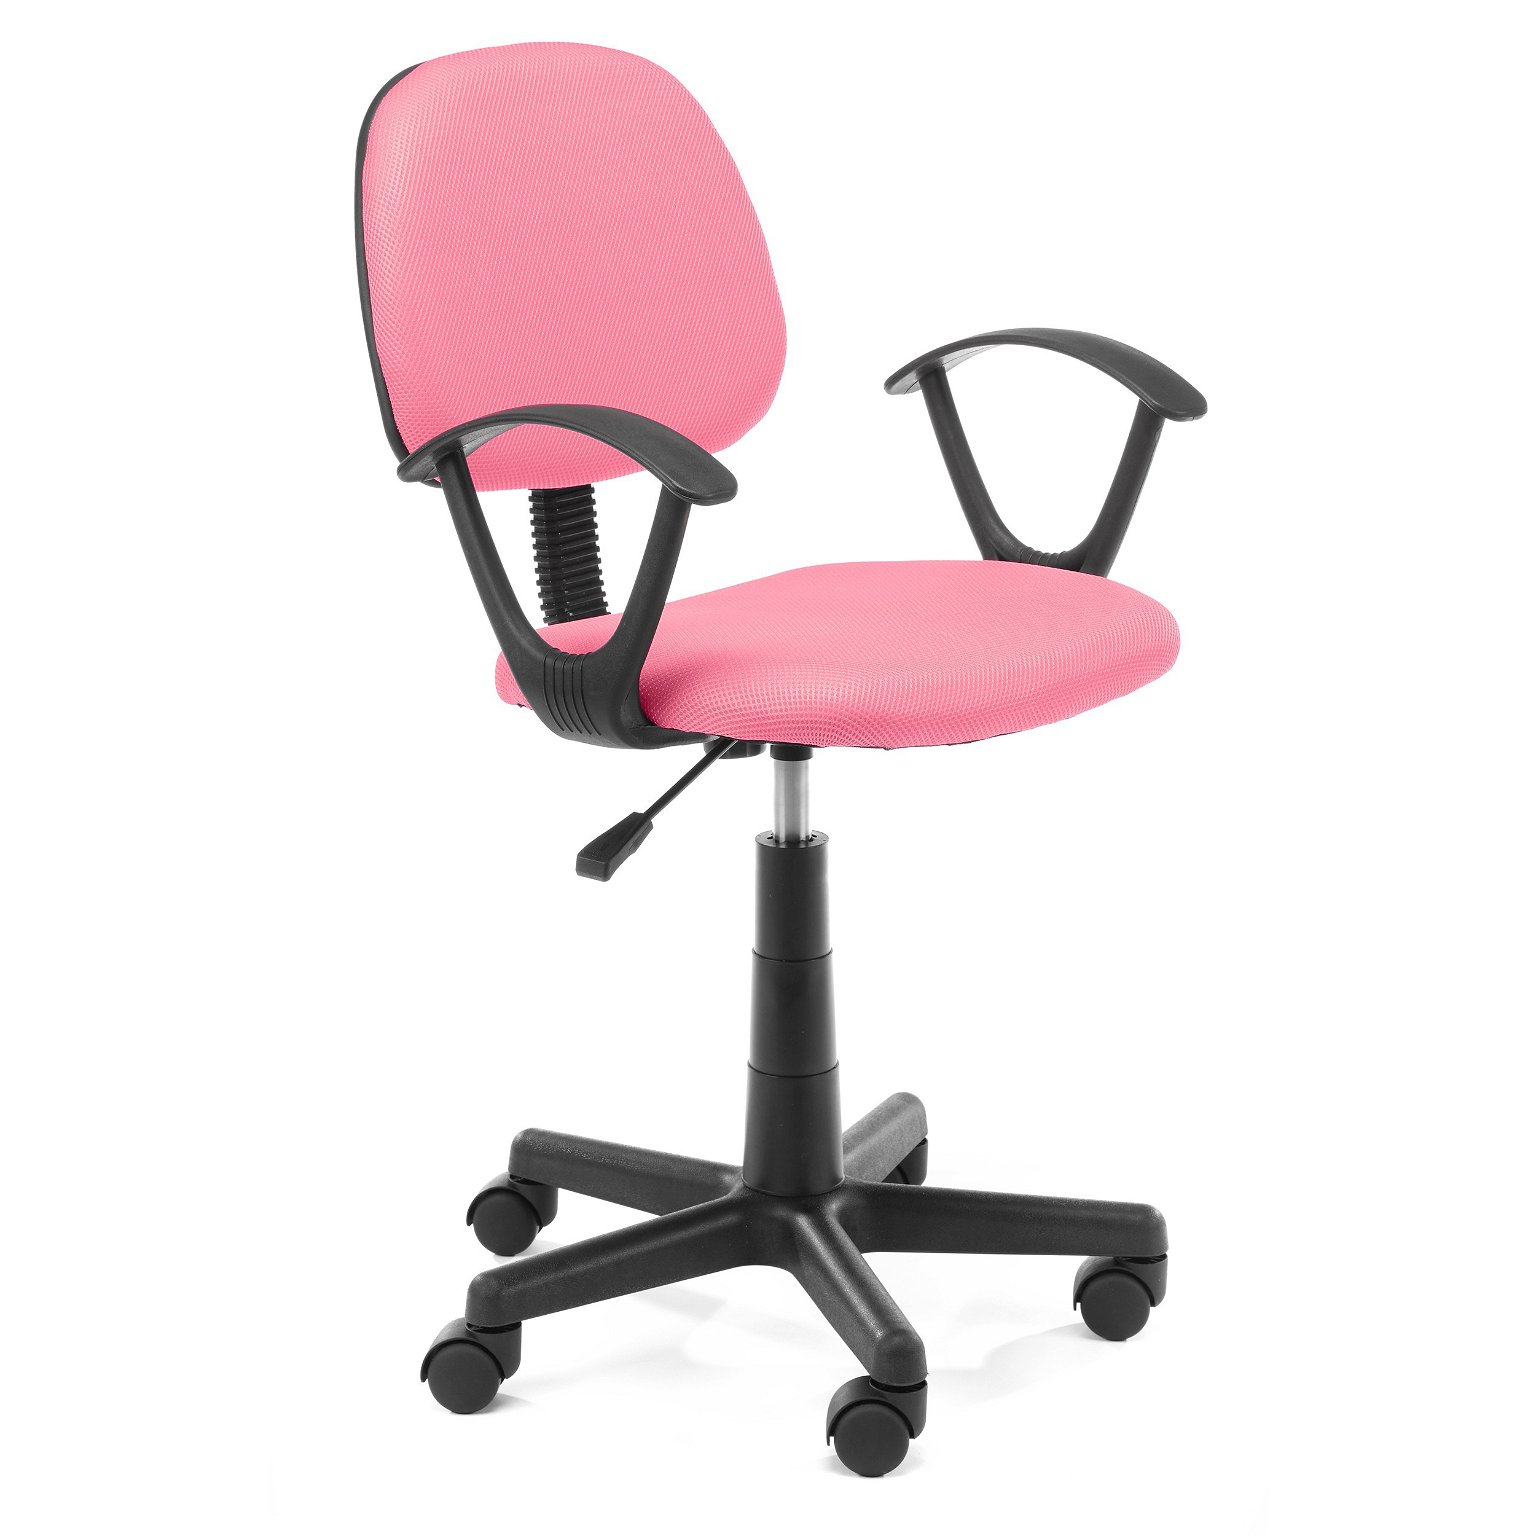 Vaikiška kėdė FD-3, rožinė - 1